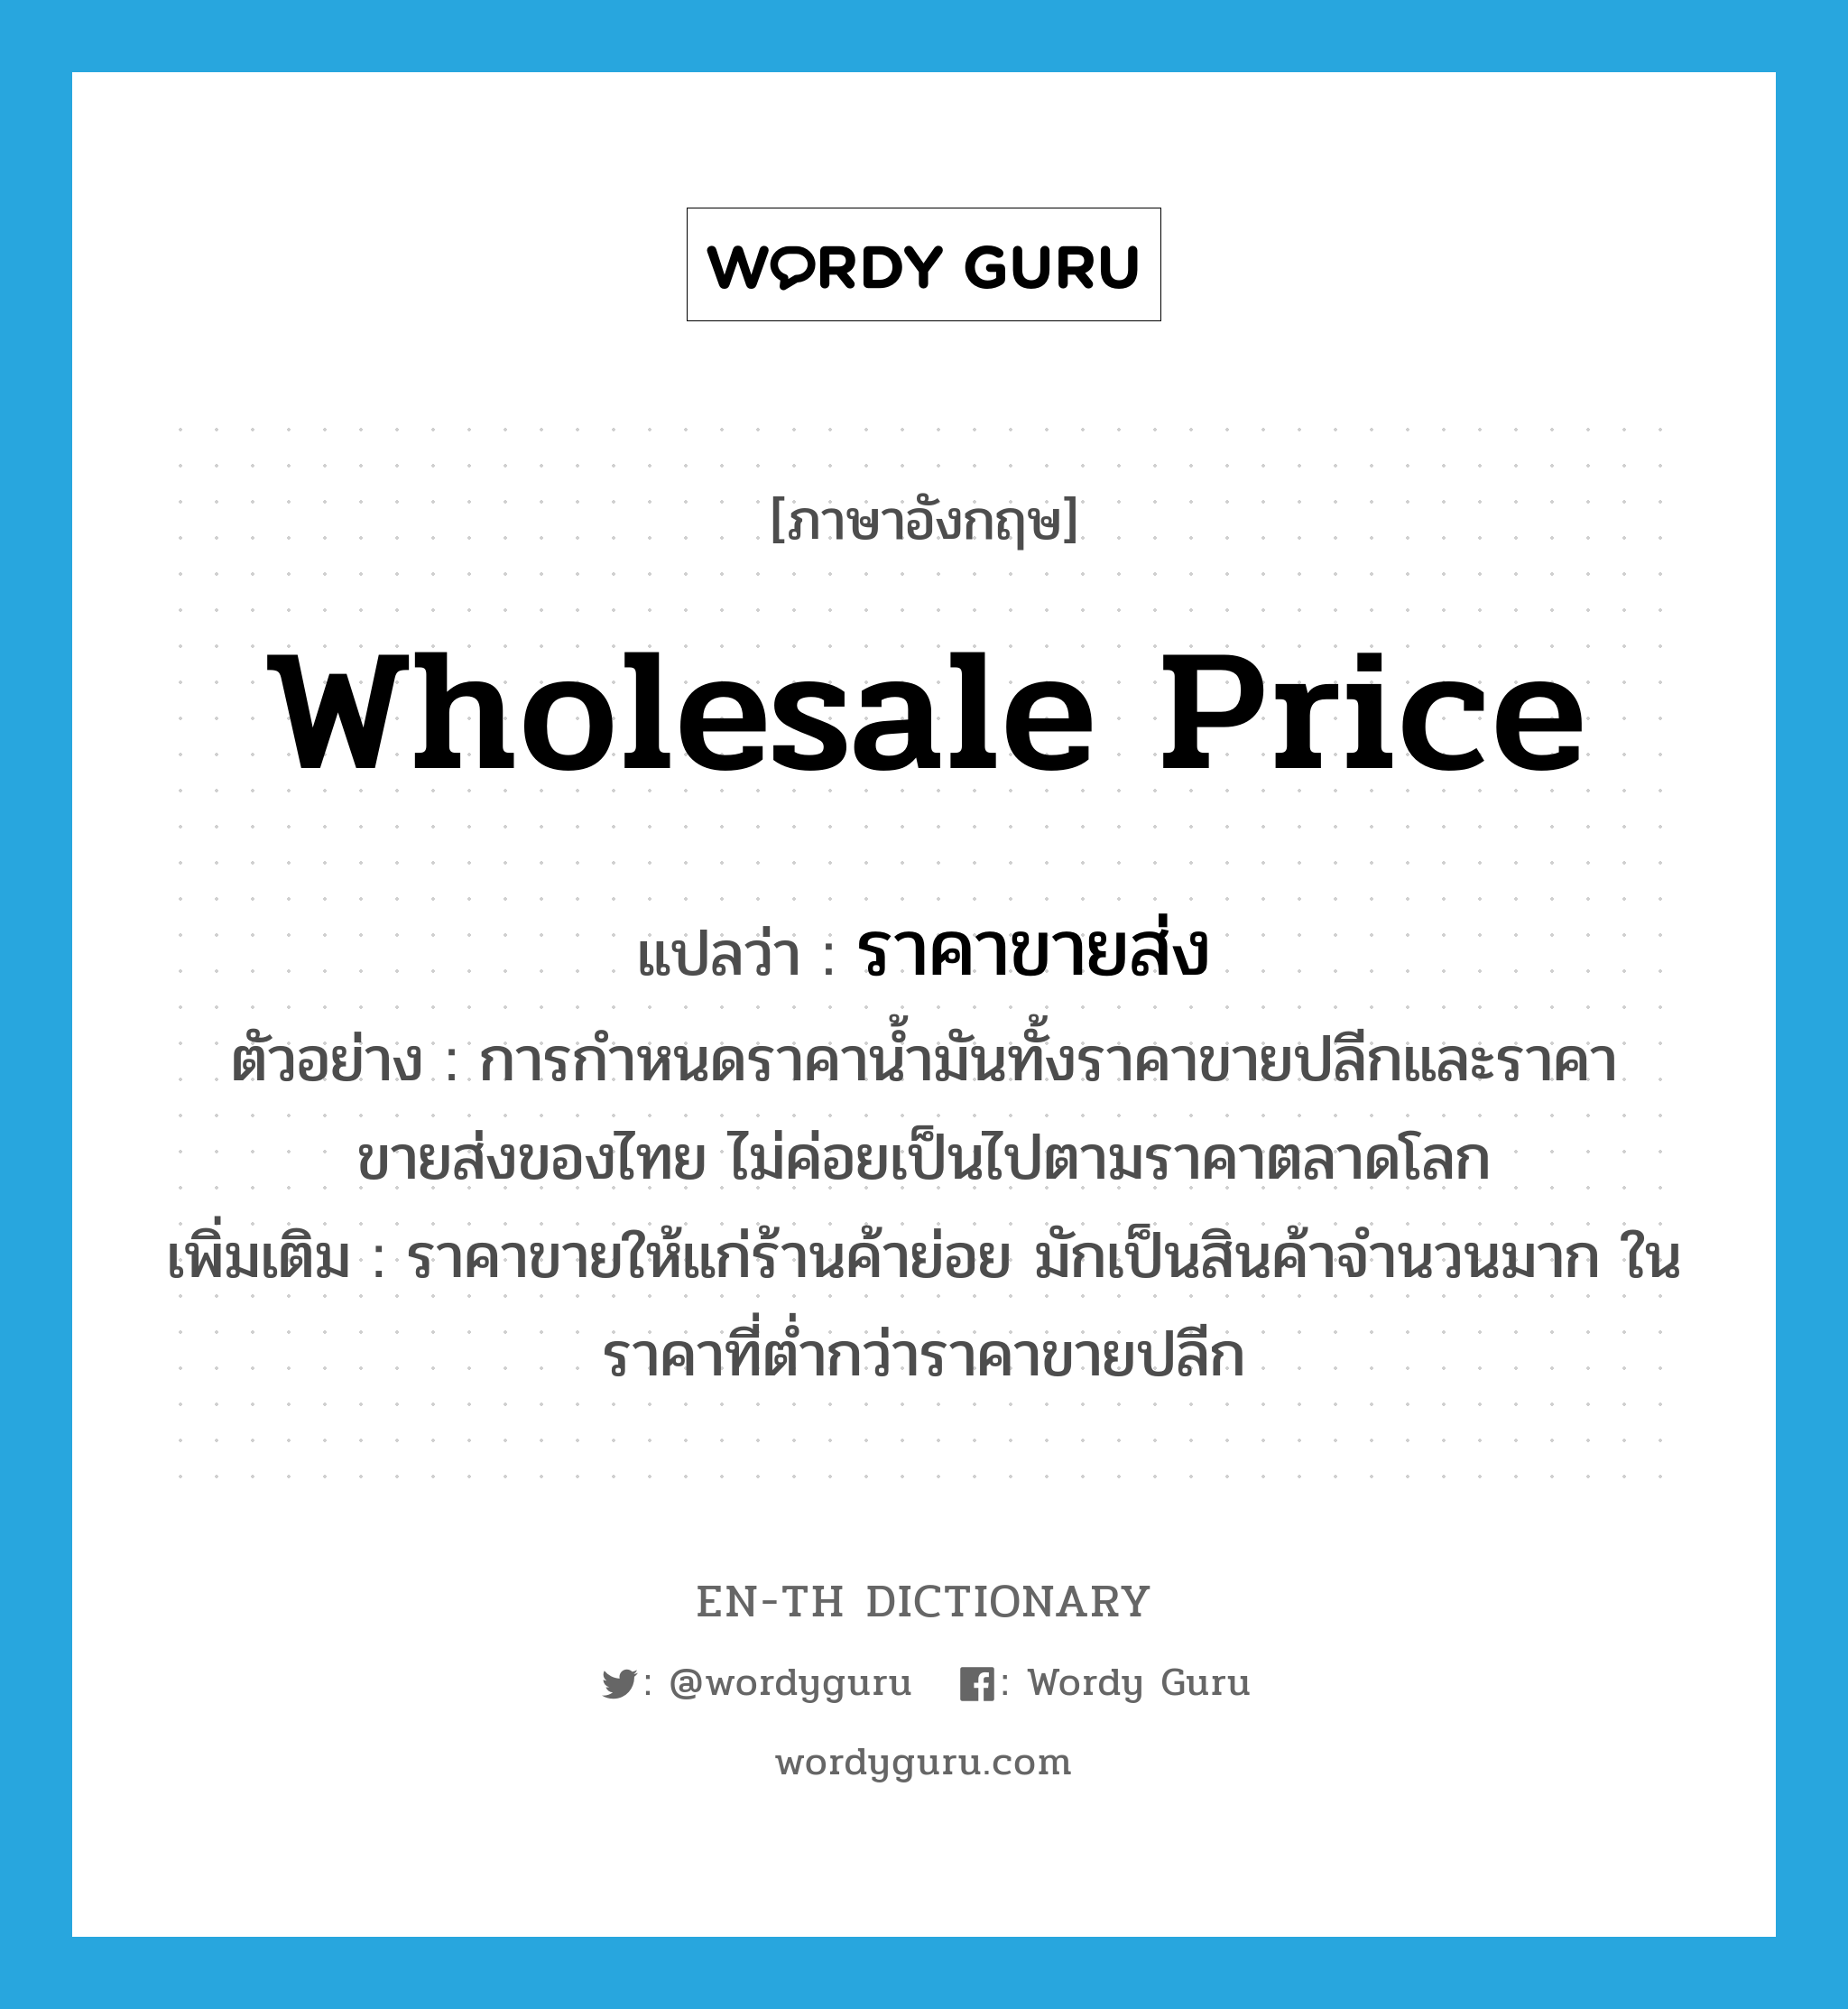 ราคาขายส่ง ภาษาอังกฤษ?, คำศัพท์ภาษาอังกฤษ ราคาขายส่ง แปลว่า wholesale price ประเภท N ตัวอย่าง การกำหนดราคาน้ำมันทั้งราคาขายปลีกและราคาขายส่งของไทย ไม่ค่อยเป็นไปตามราคาตลาดโลก เพิ่มเติม ราคาขายให้แก่ร้านค้าย่อย มักเป็นสินค้าจำนวนมาก ในราคาที่ต่ำกว่าราคาขายปลีก หมวด N